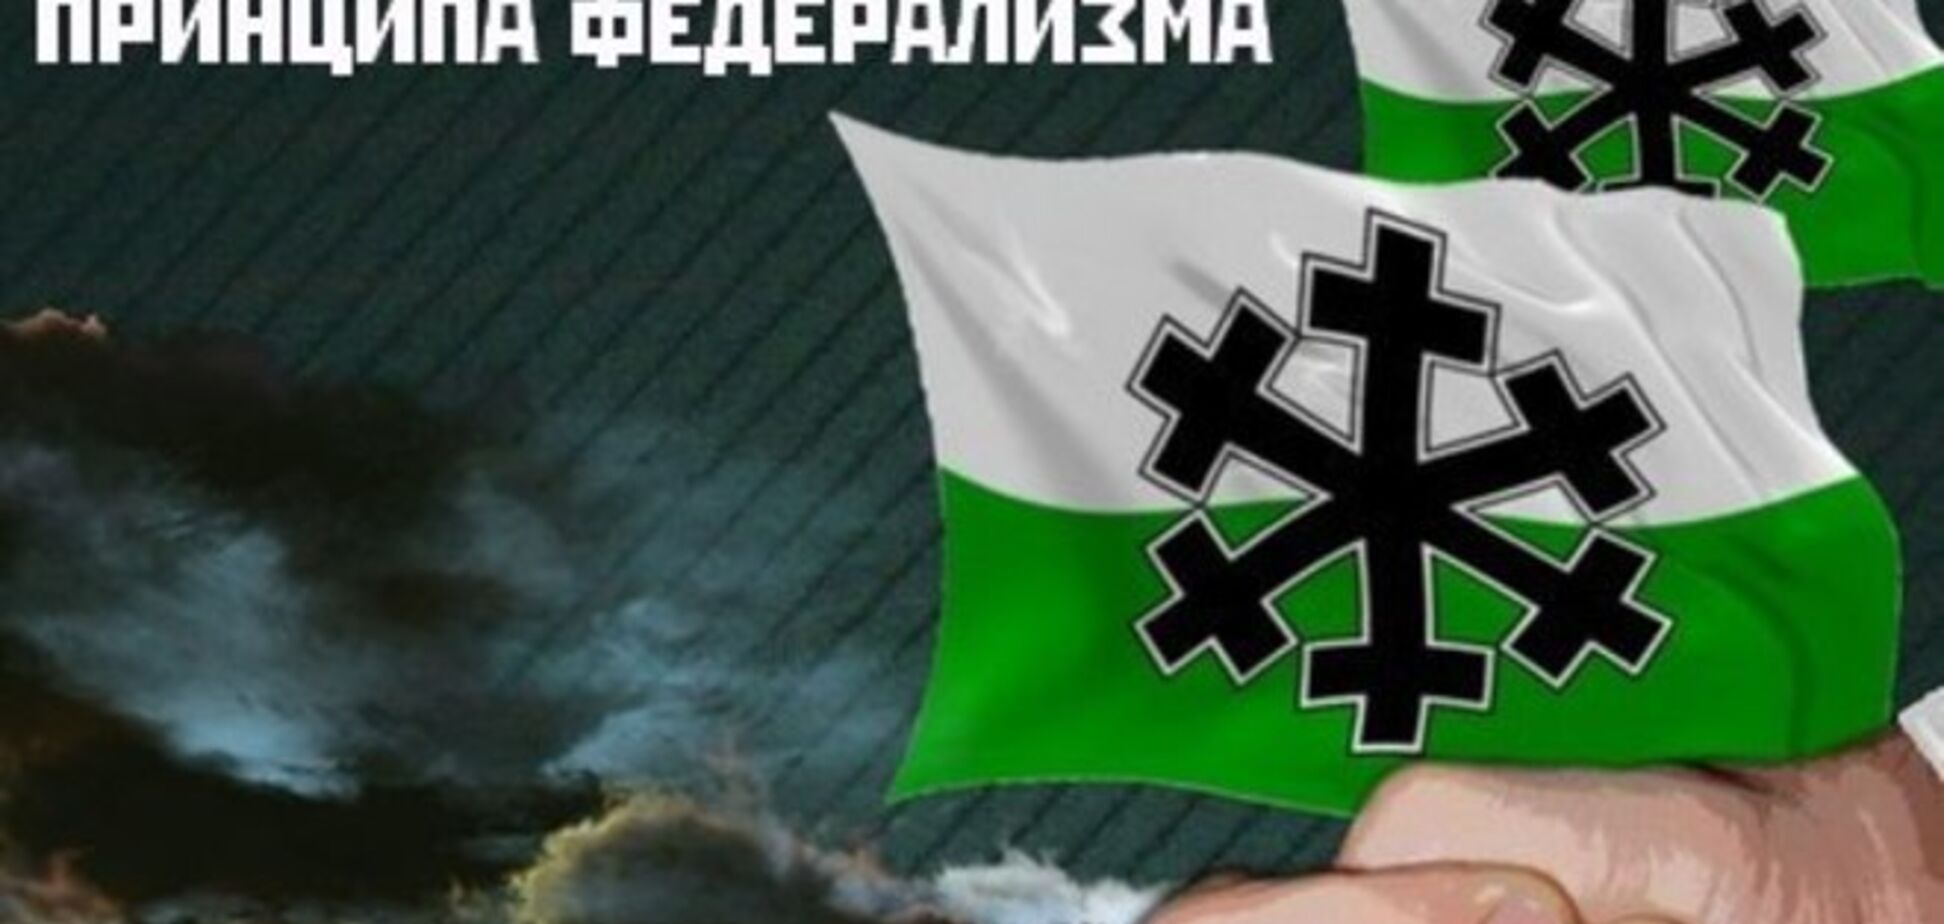 Організатори 'Маршу за федералізацію Сибіру' змінили тему акції на догоду російській владі